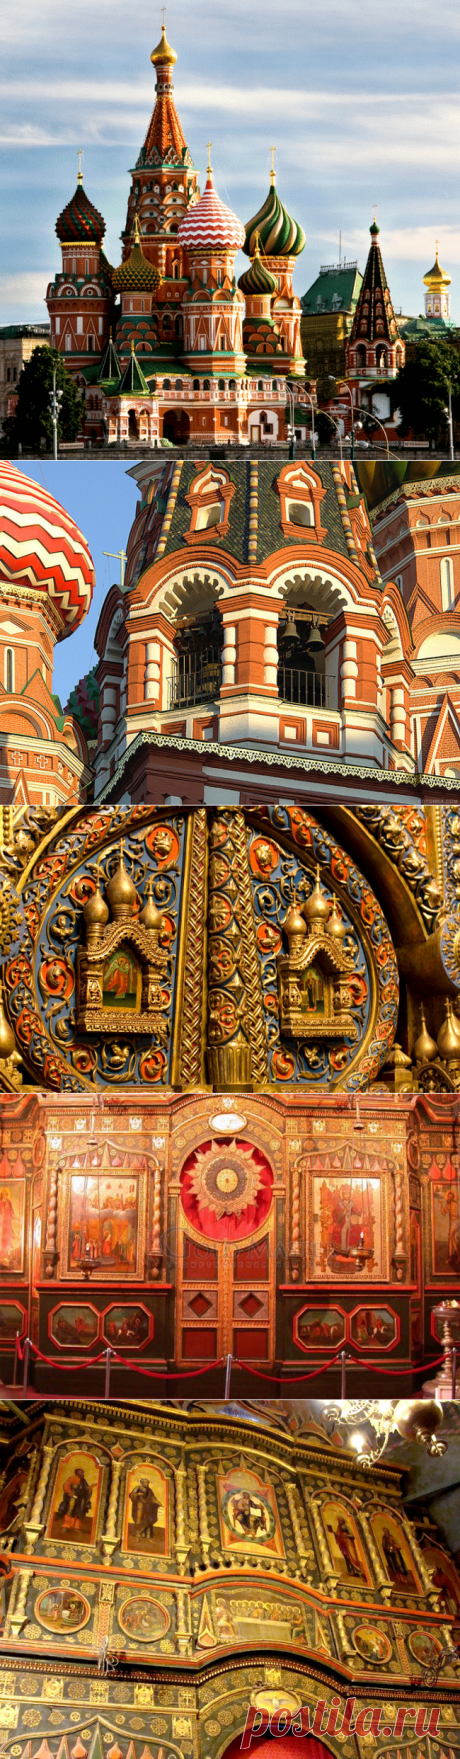 Храм Василия Блаженного - один из главных символов России